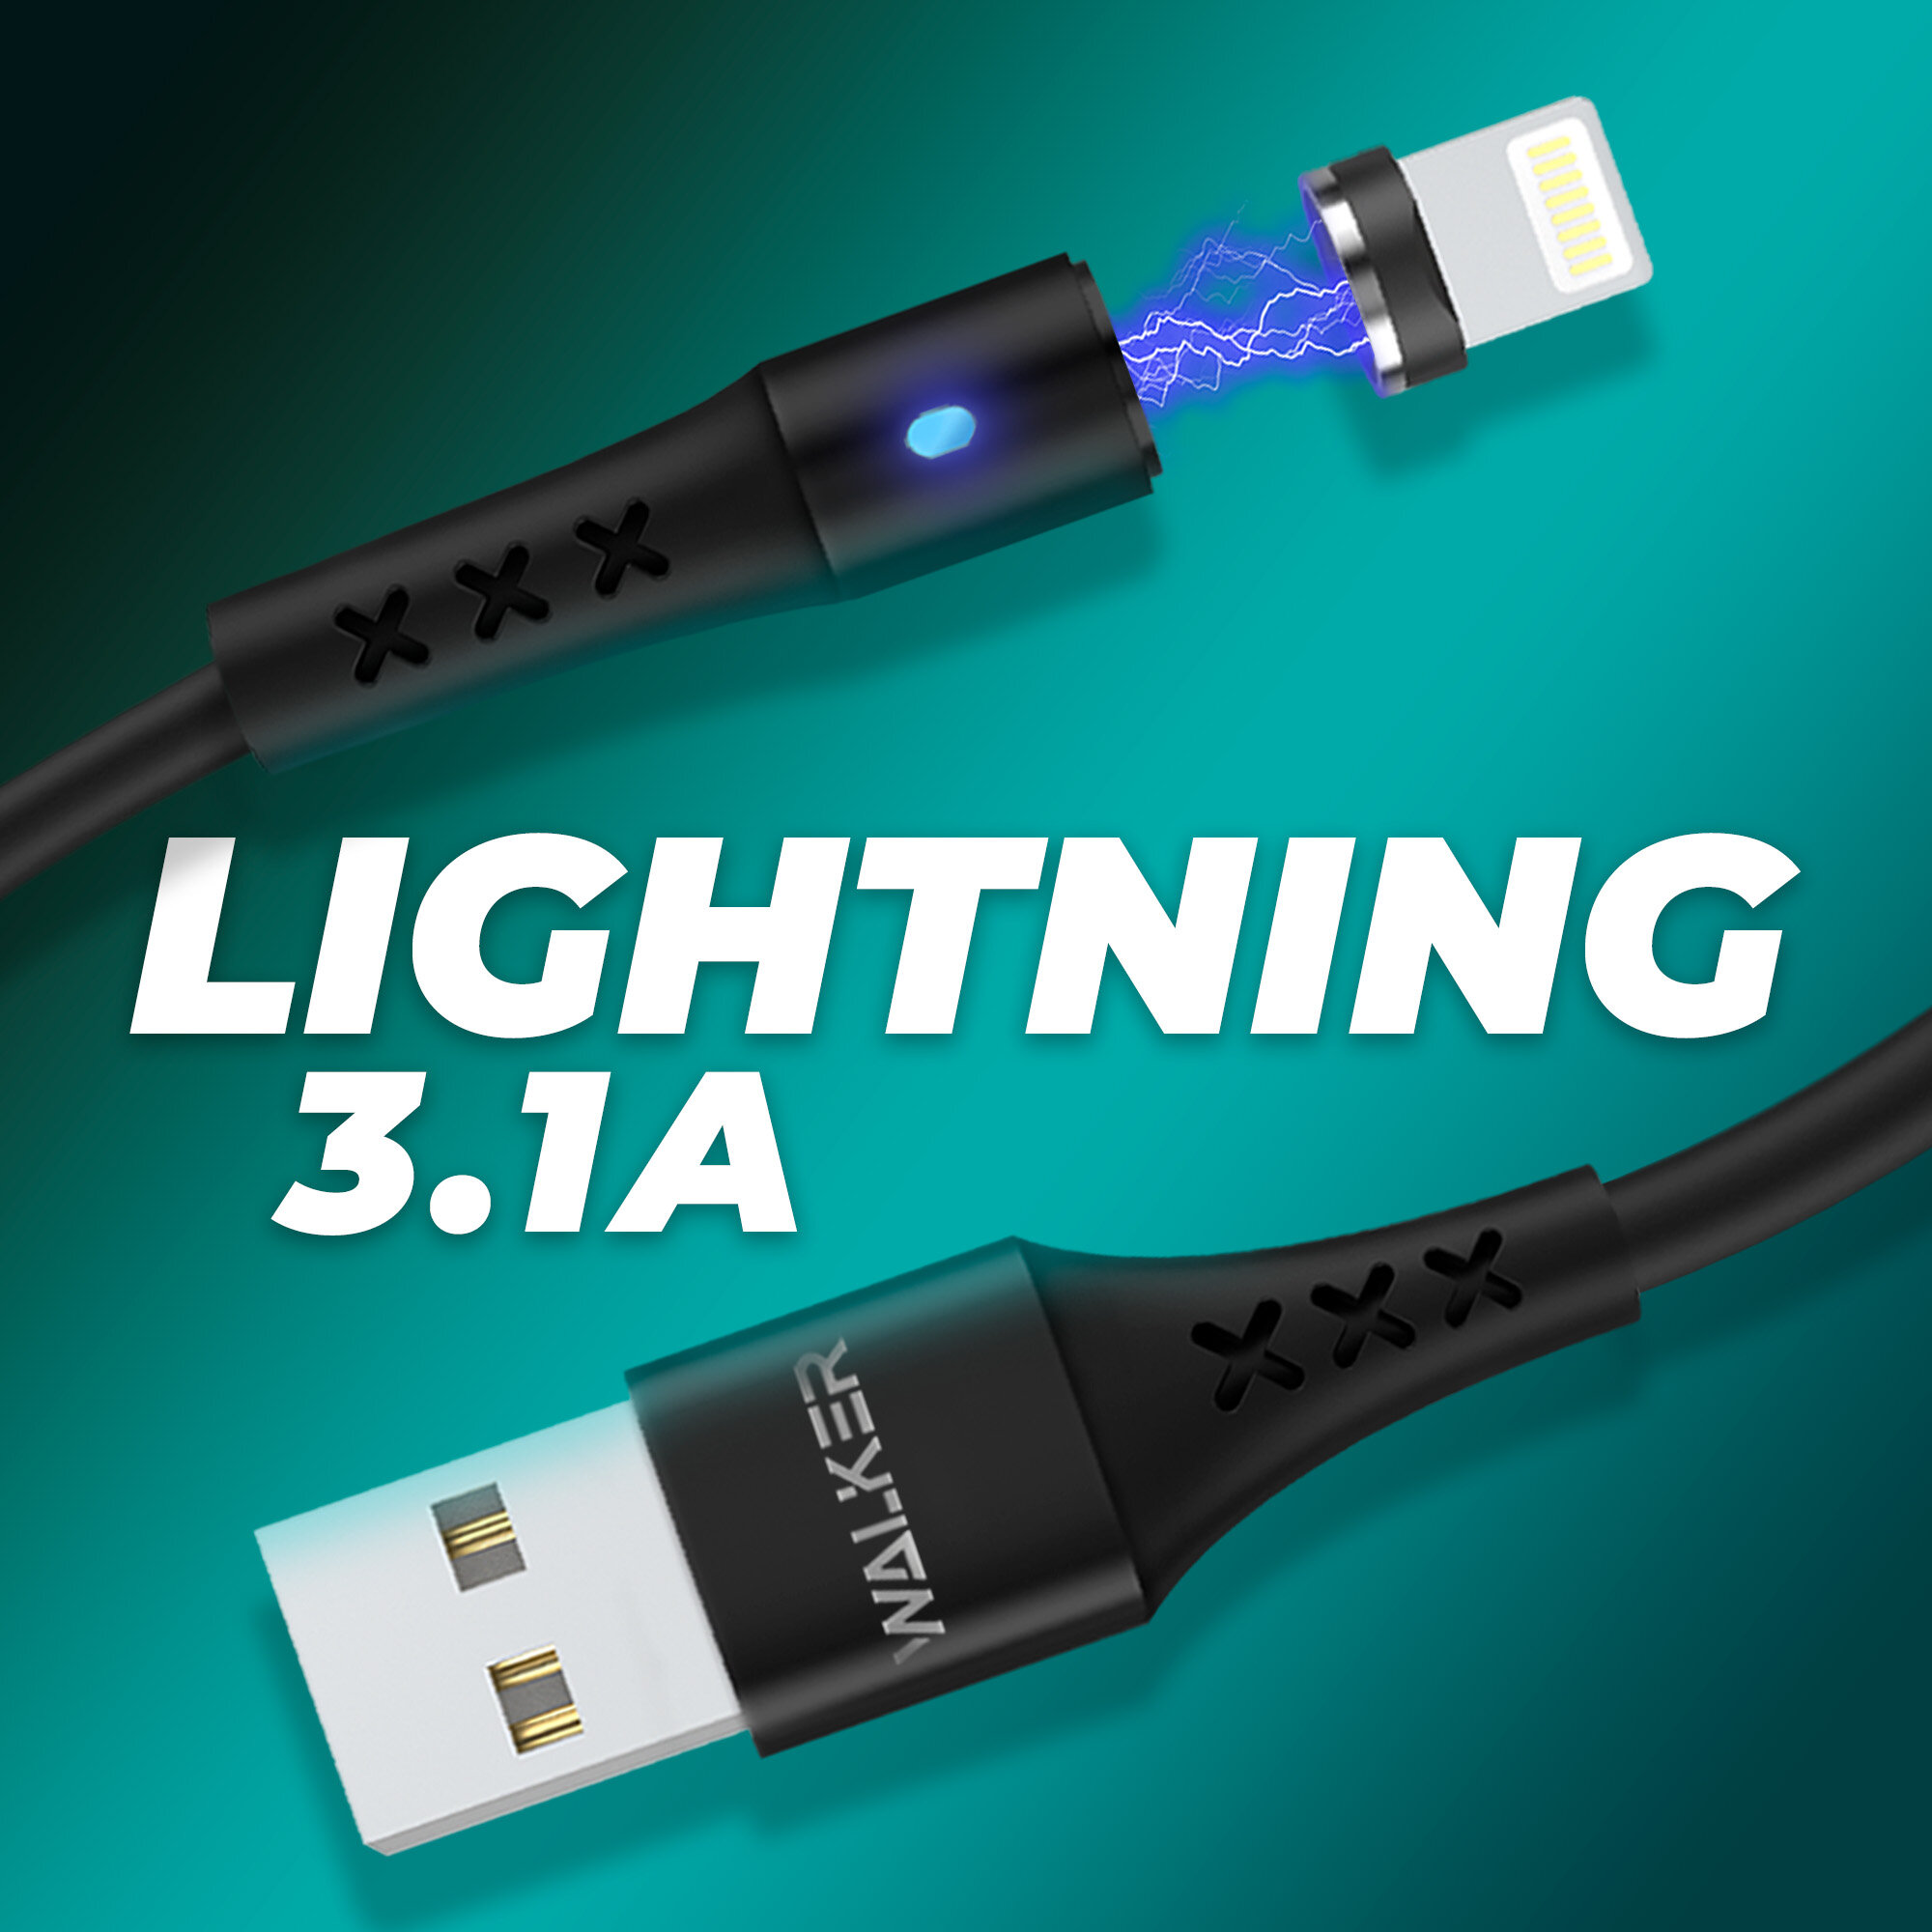 Кабель USB для телефона магнитный с индикатором Lightning, WALKER, WC-775, 3.1 А, usb провод на айфон, шнур для зарядки на iphone, аксессуар, черный